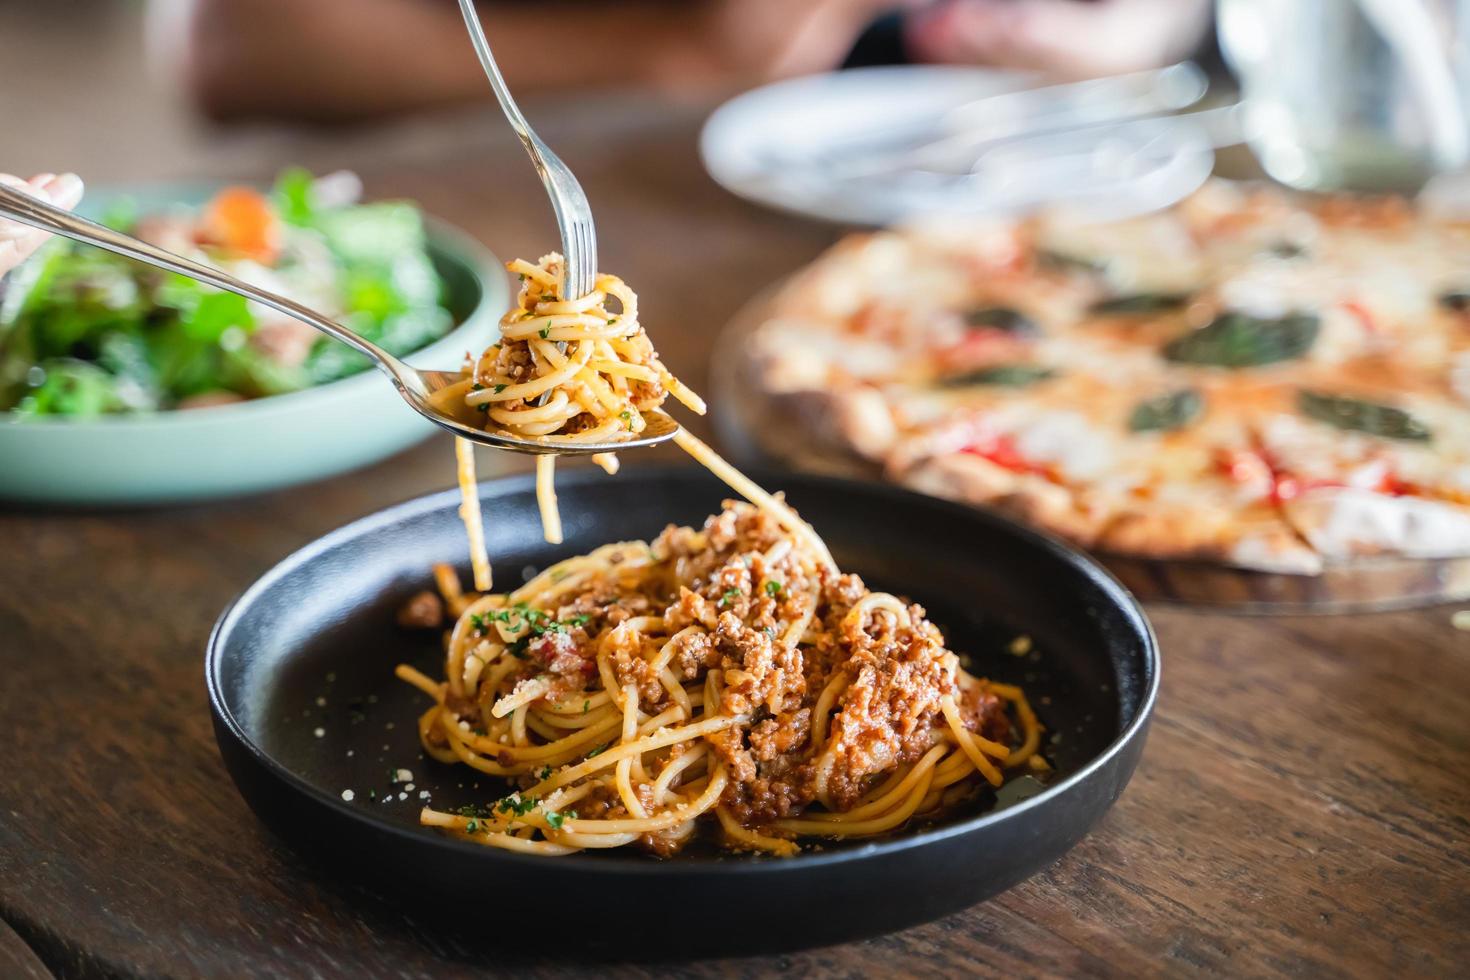 comiendo comida. gente comiendo comida italiana pasta, pizza, ensalada en la mesa. foto